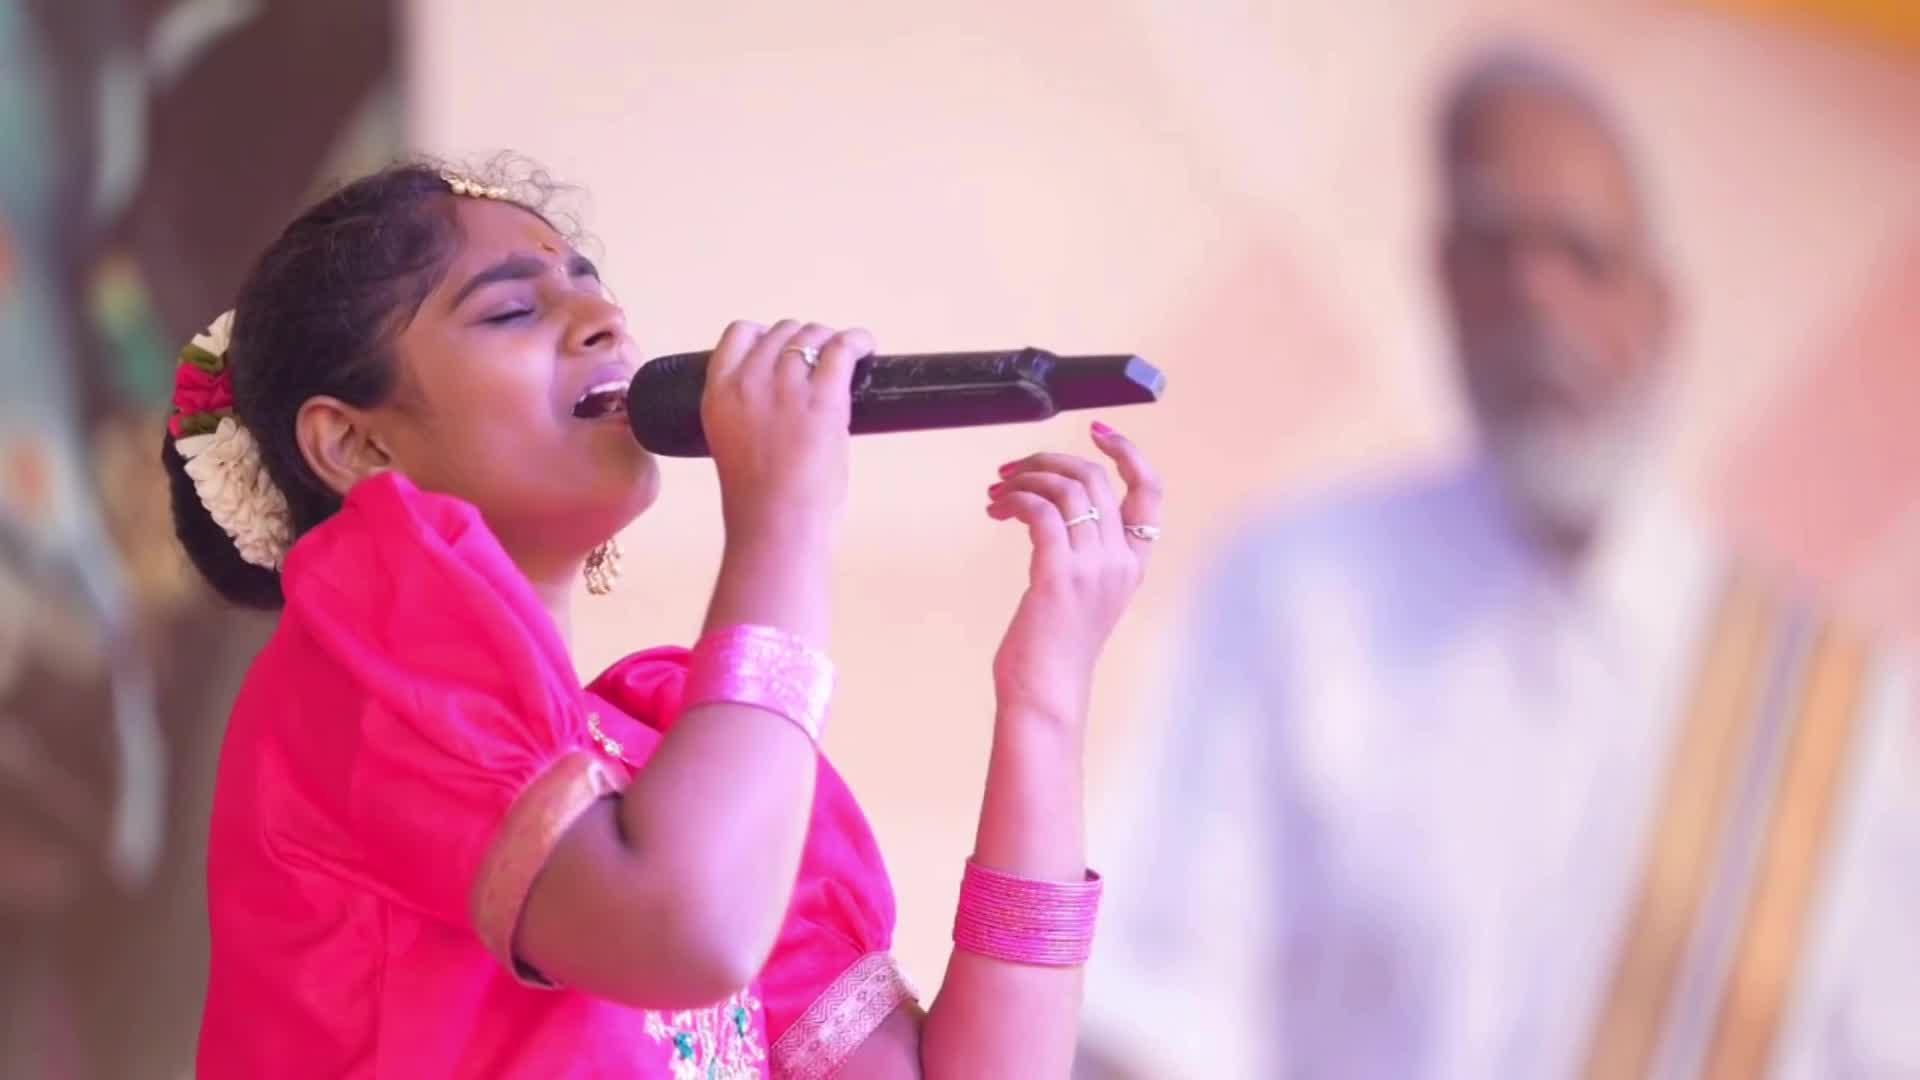 PM Modi Video: पोंगल के अवसर पर युवा लड़की ने पीएम मोदी के छुए पैर, तो प्रधानमंत्री ने उपहार में दिया शॉल